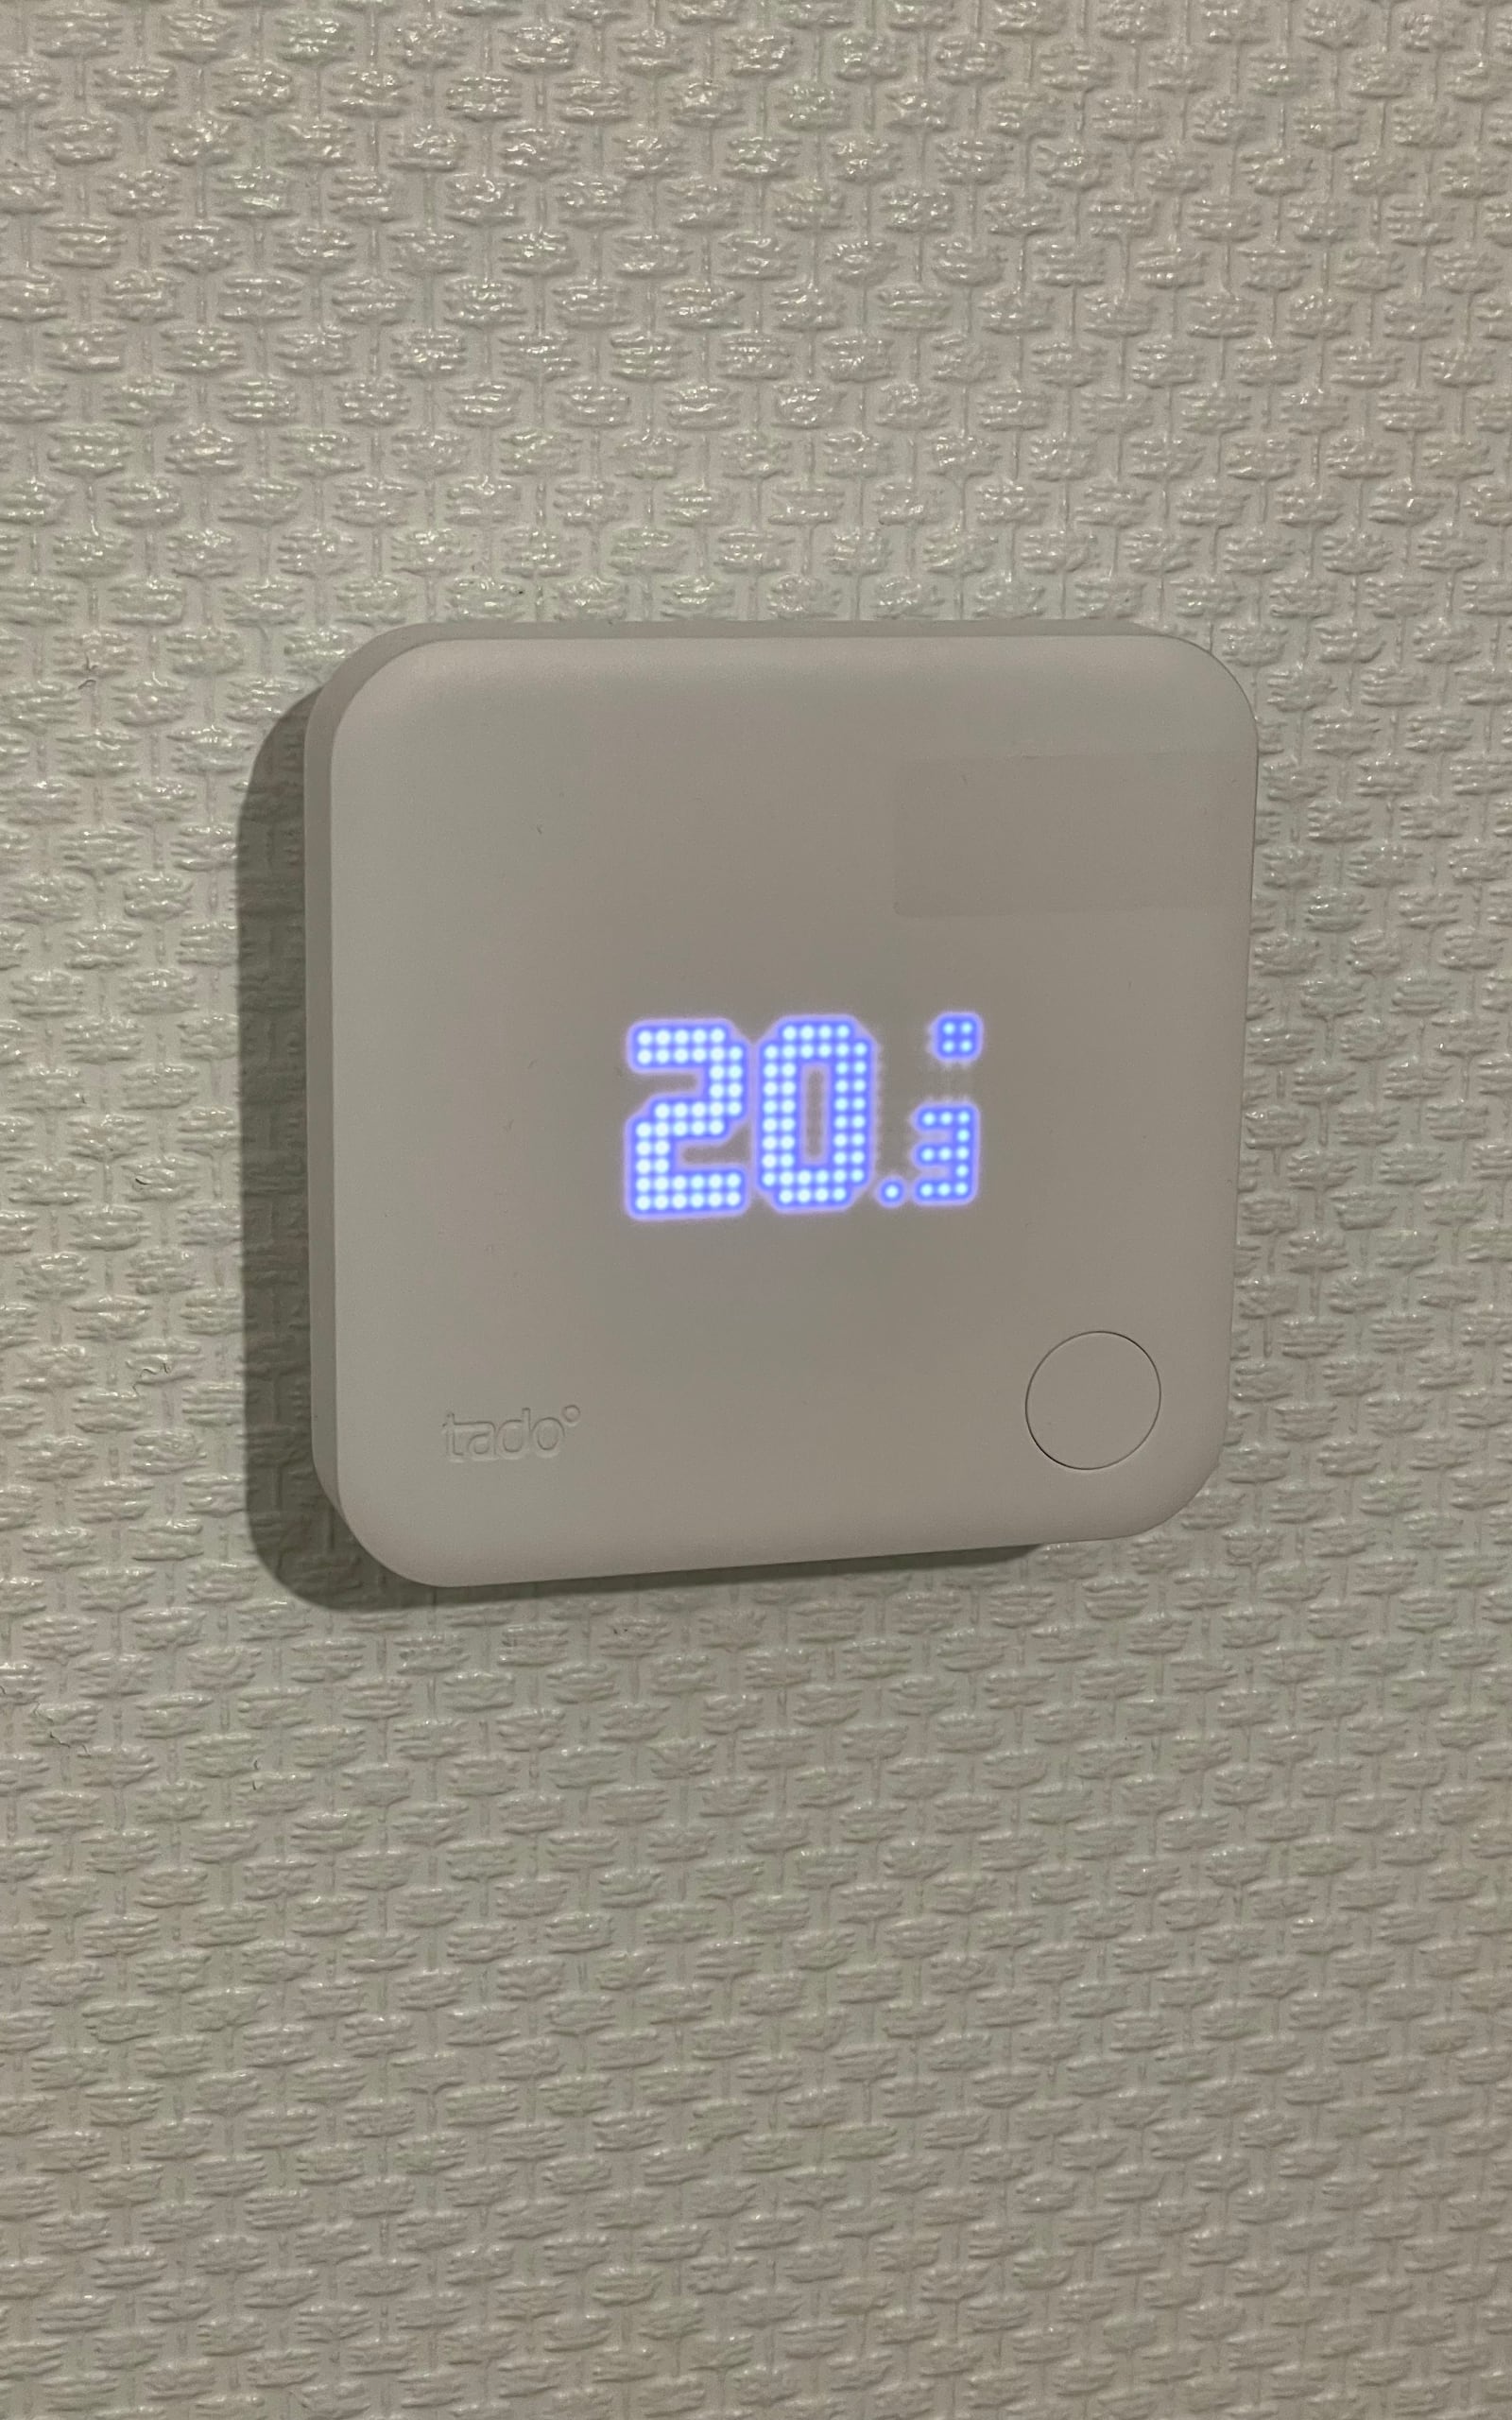 Anzeige und Einstellung der Temperatur sind auch manuell über das tado Thermostat möglich.